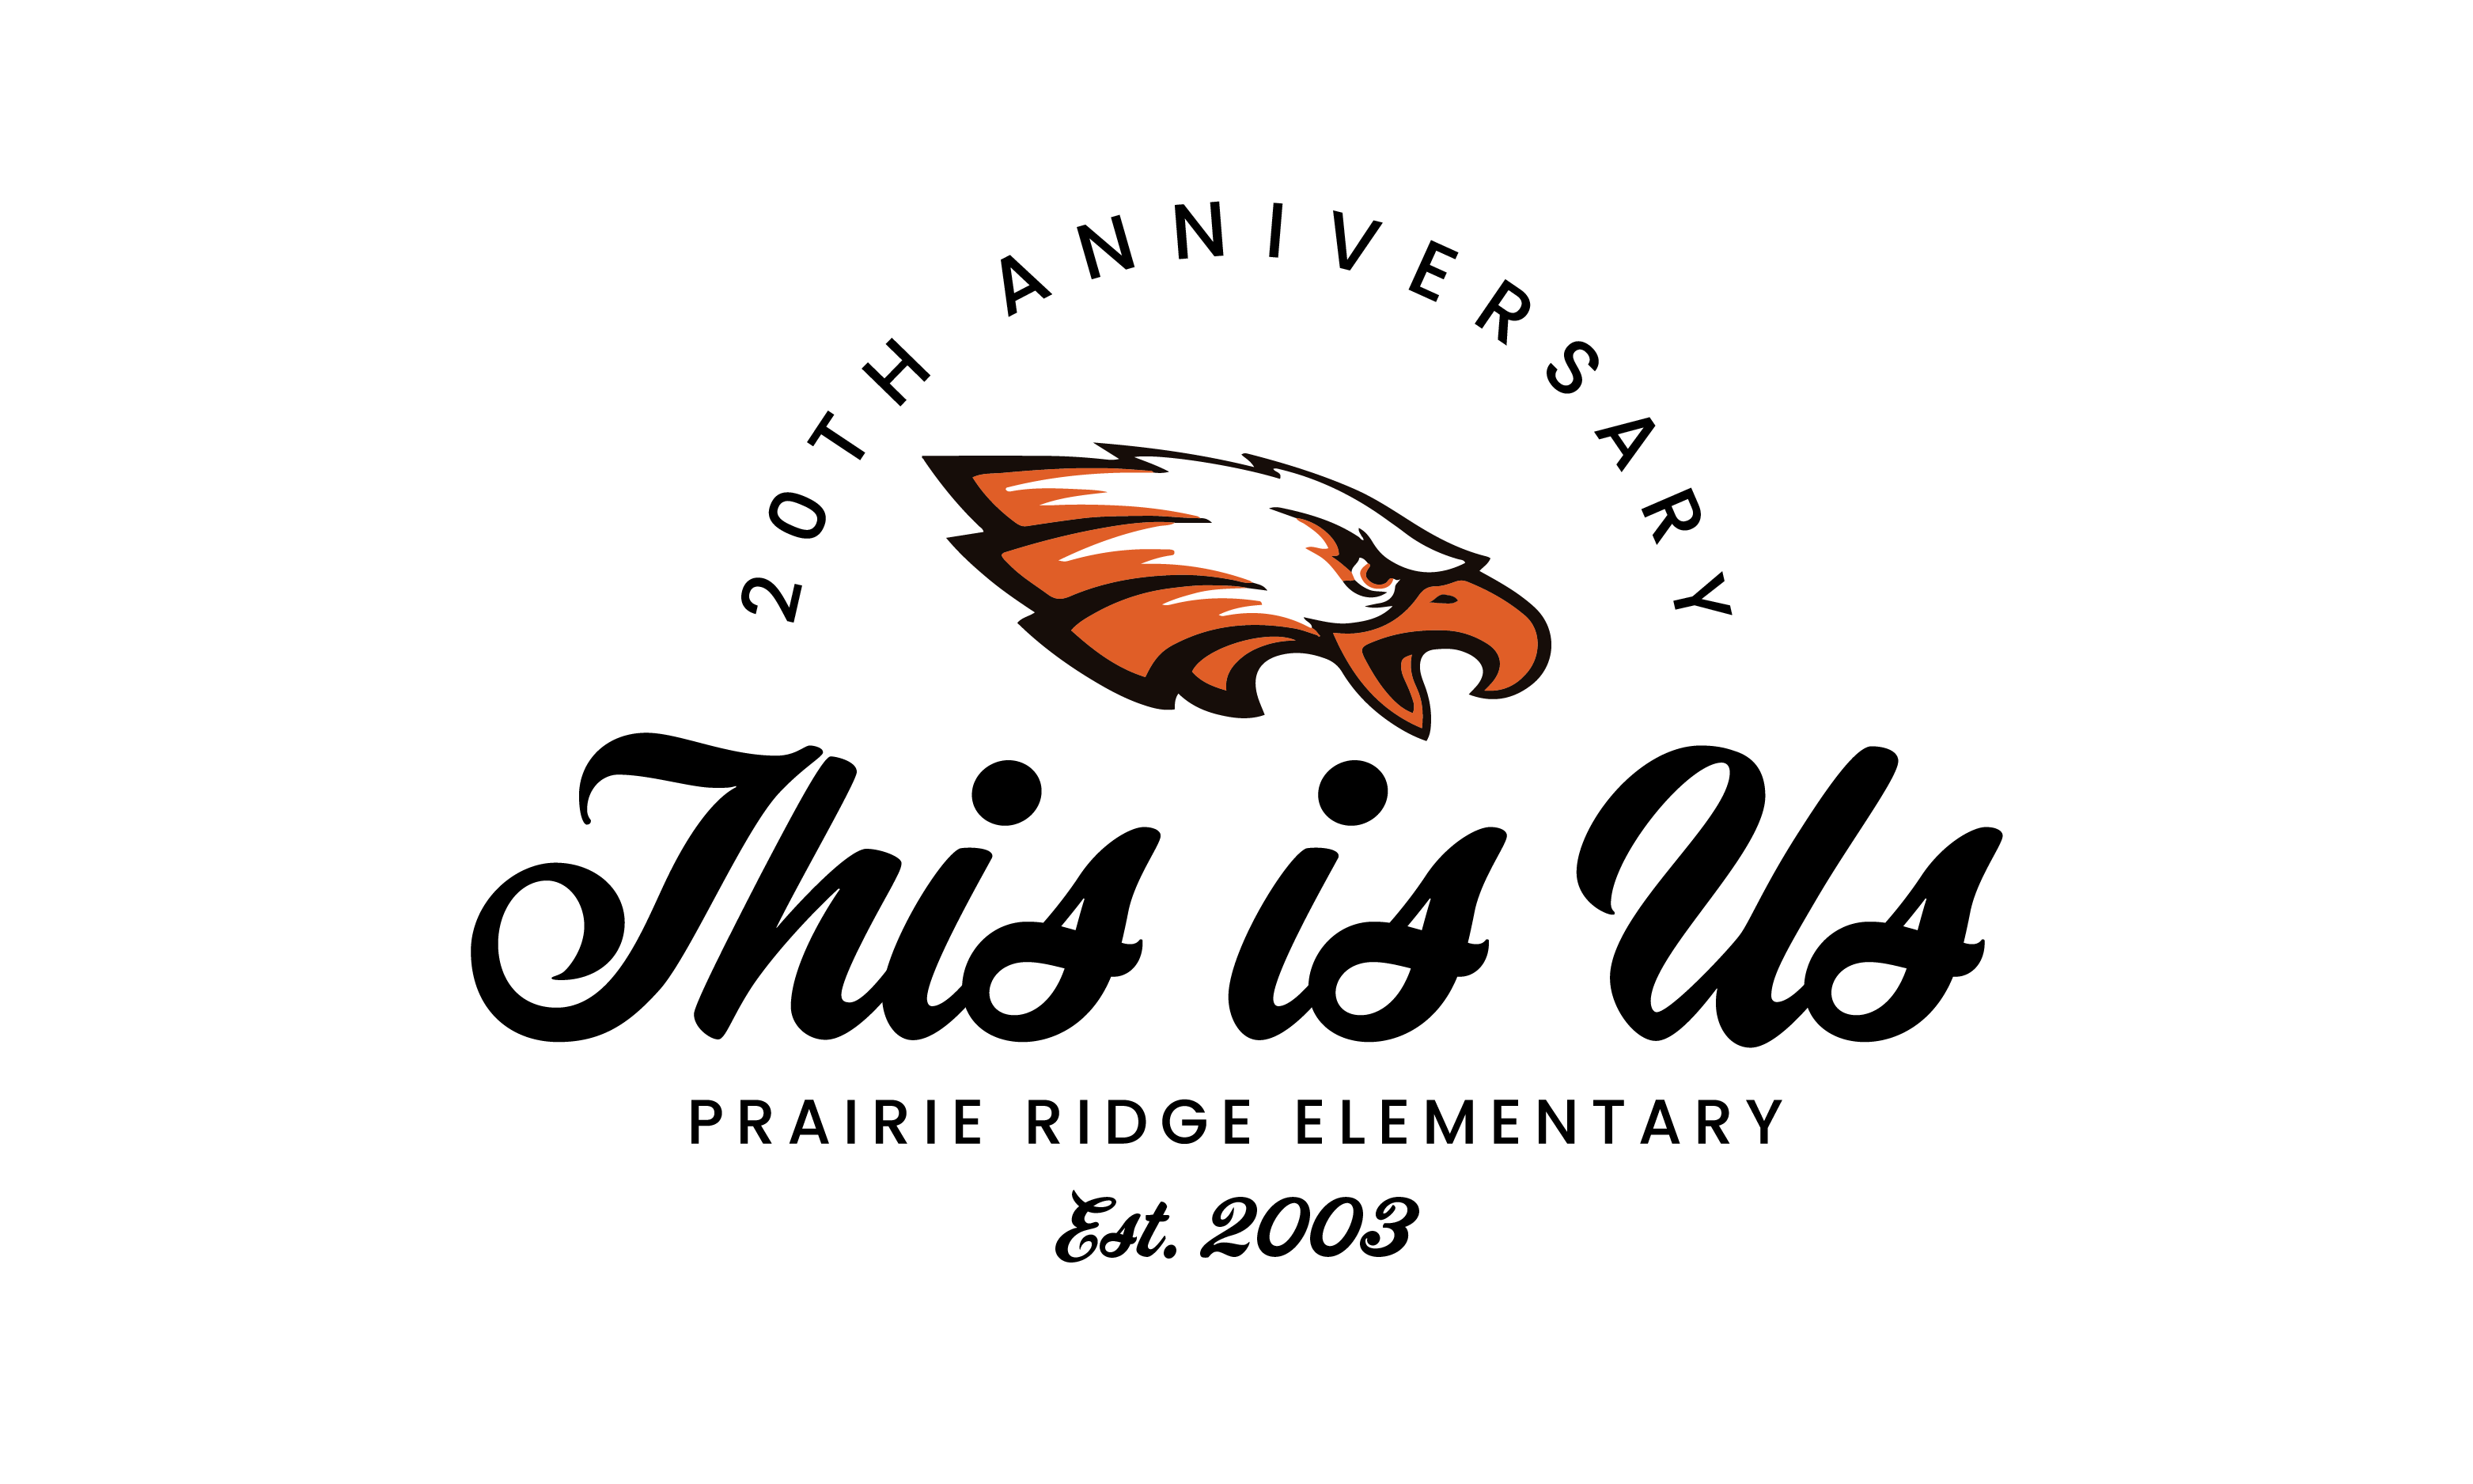 Prairie Ridge Elementary | 20 Year Anniversary